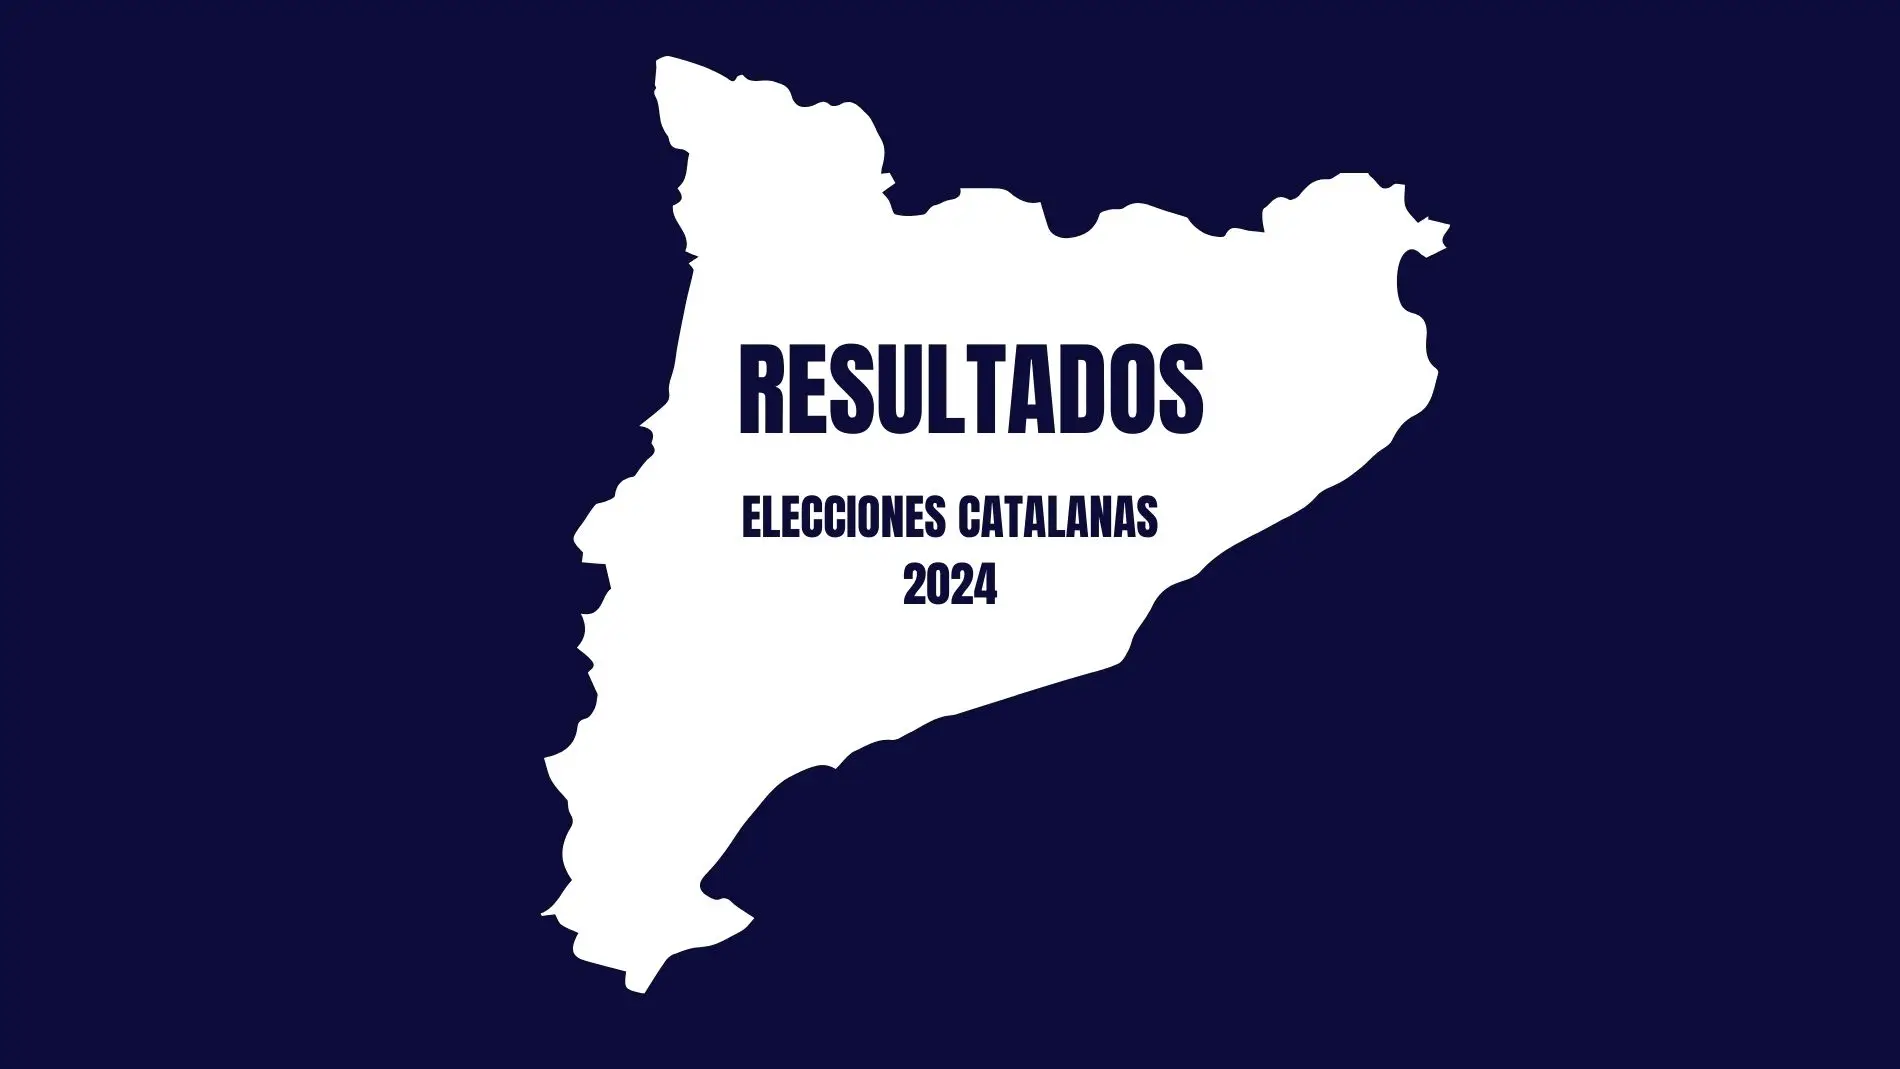 Elecciones catalanas 2024: resultados